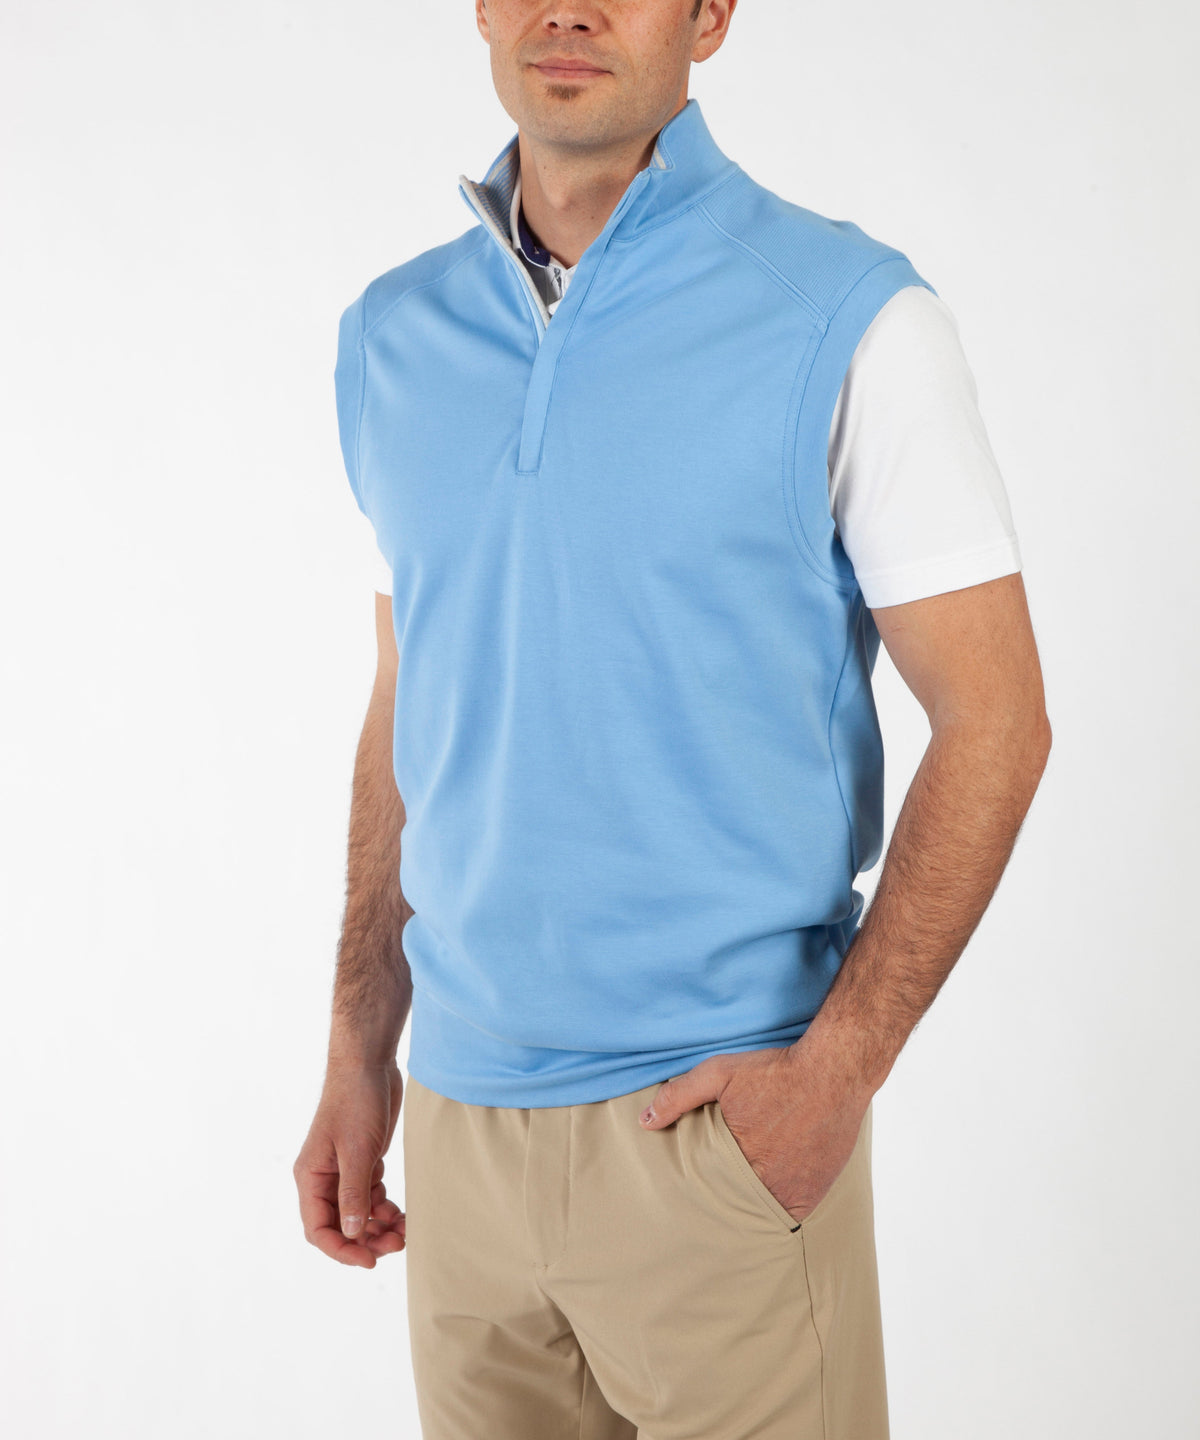 Signature Leaderboard Pima Cotton Quarter-Zip Vest